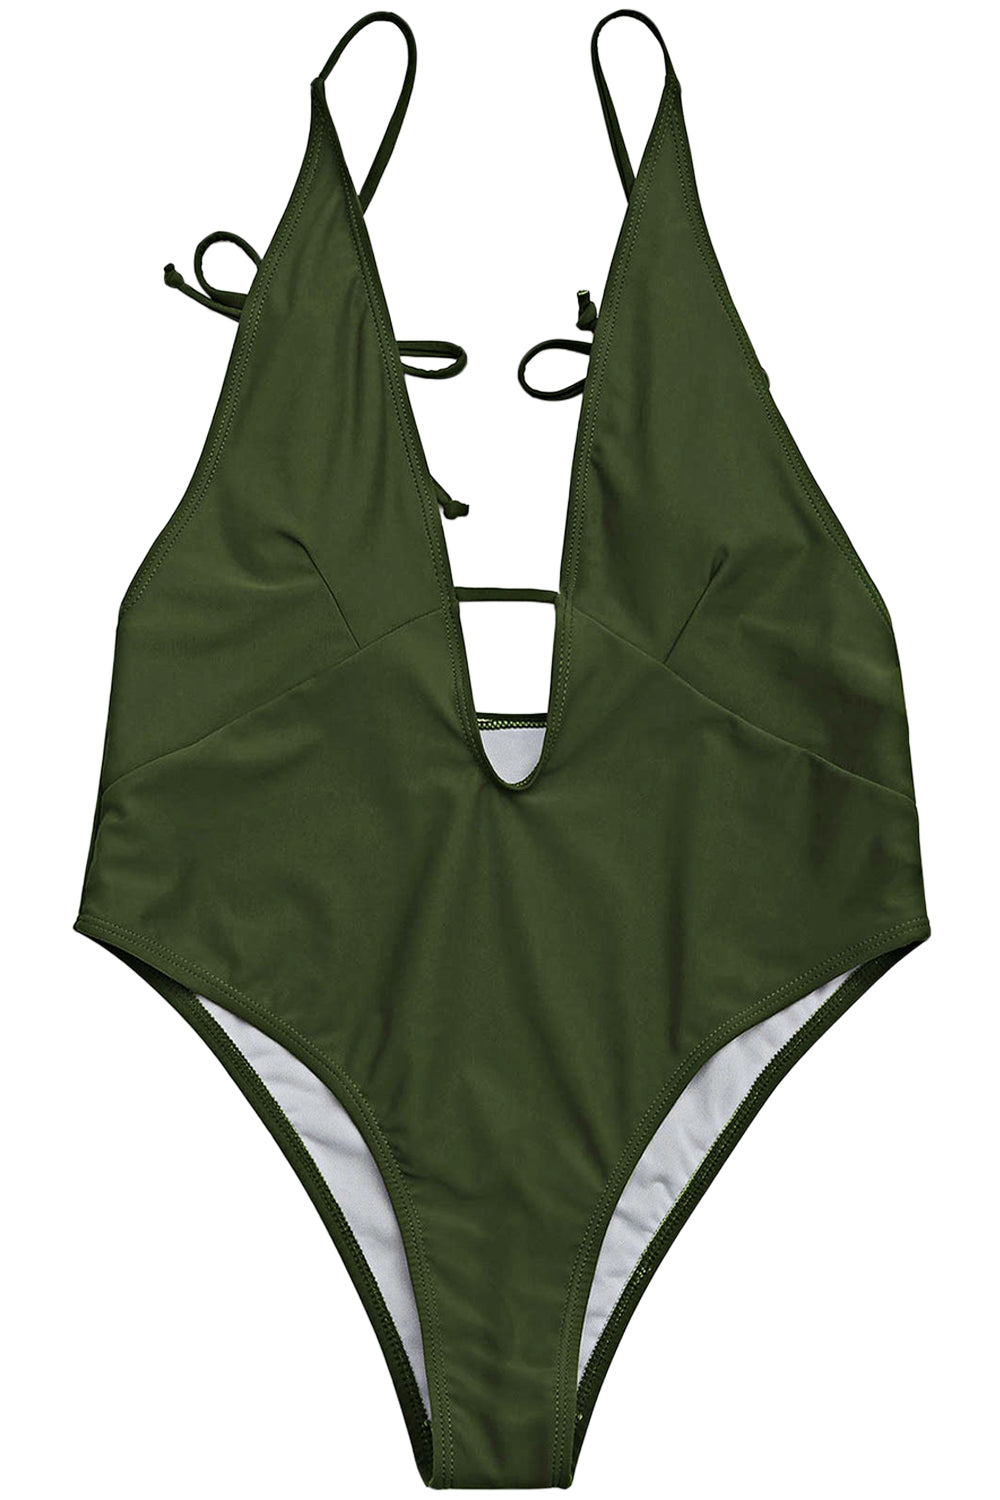 Iyasson Exquisite Green Halter One-piece Swimsuit